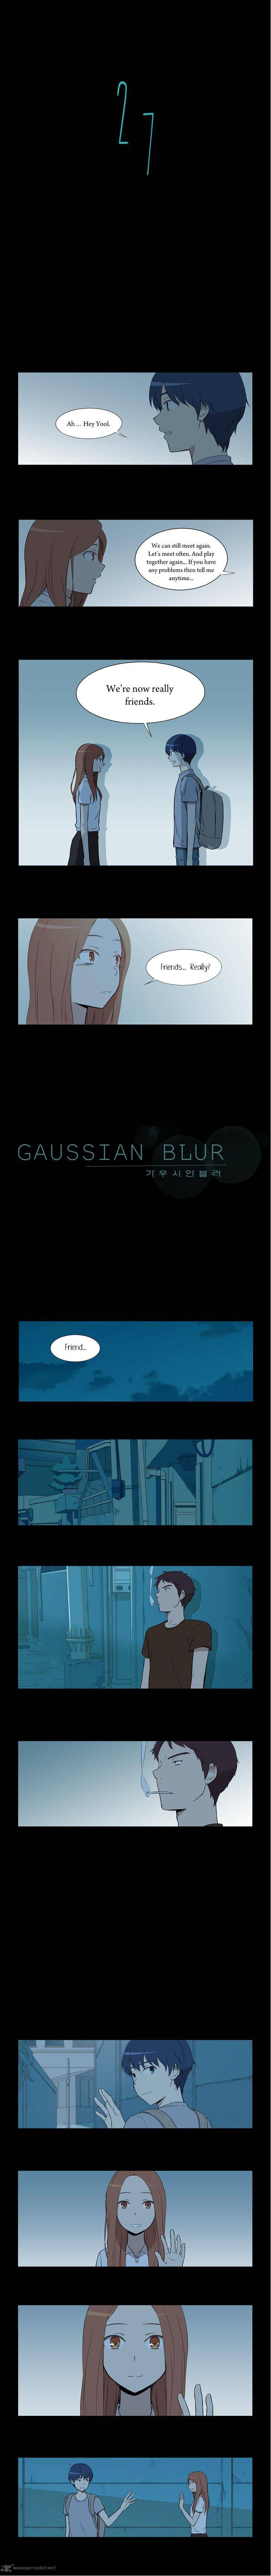 Gaussian Blur 27 1